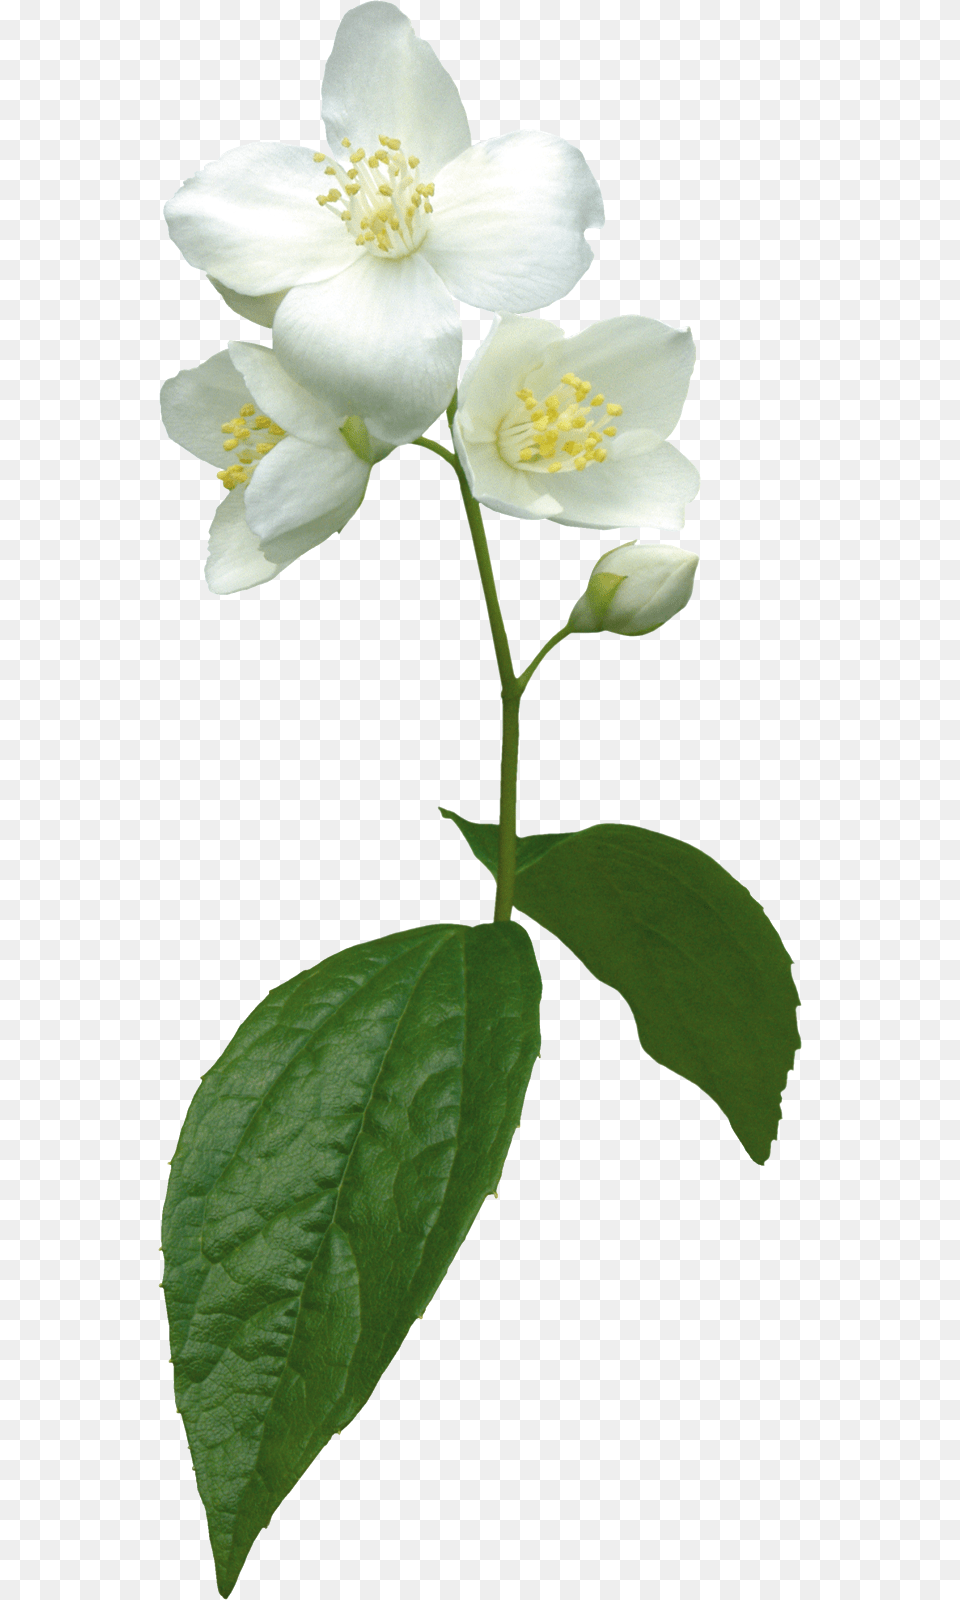 Jasmine Flower Clip Art, Plant, Pollen, Rose, Leaf Free Transparent Png